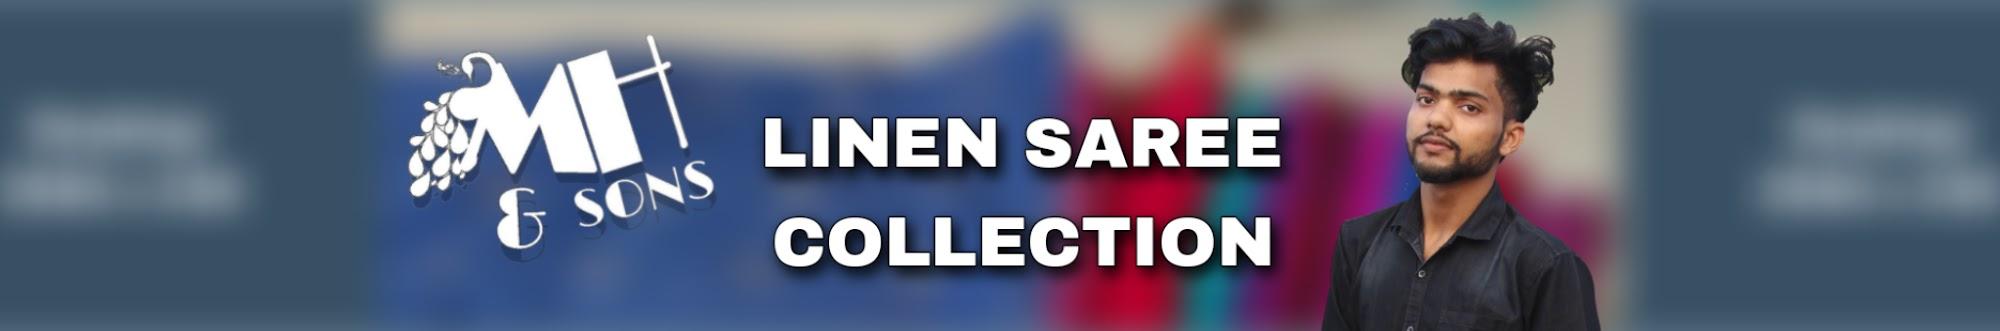 LINEN SAREE Collection